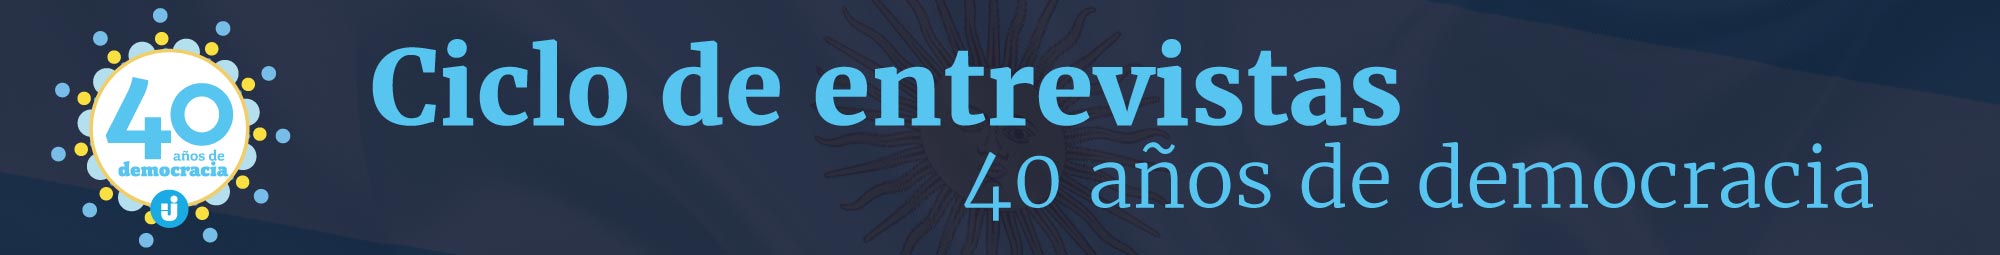 Ciclo de entrevistas "40 años de Democracia"